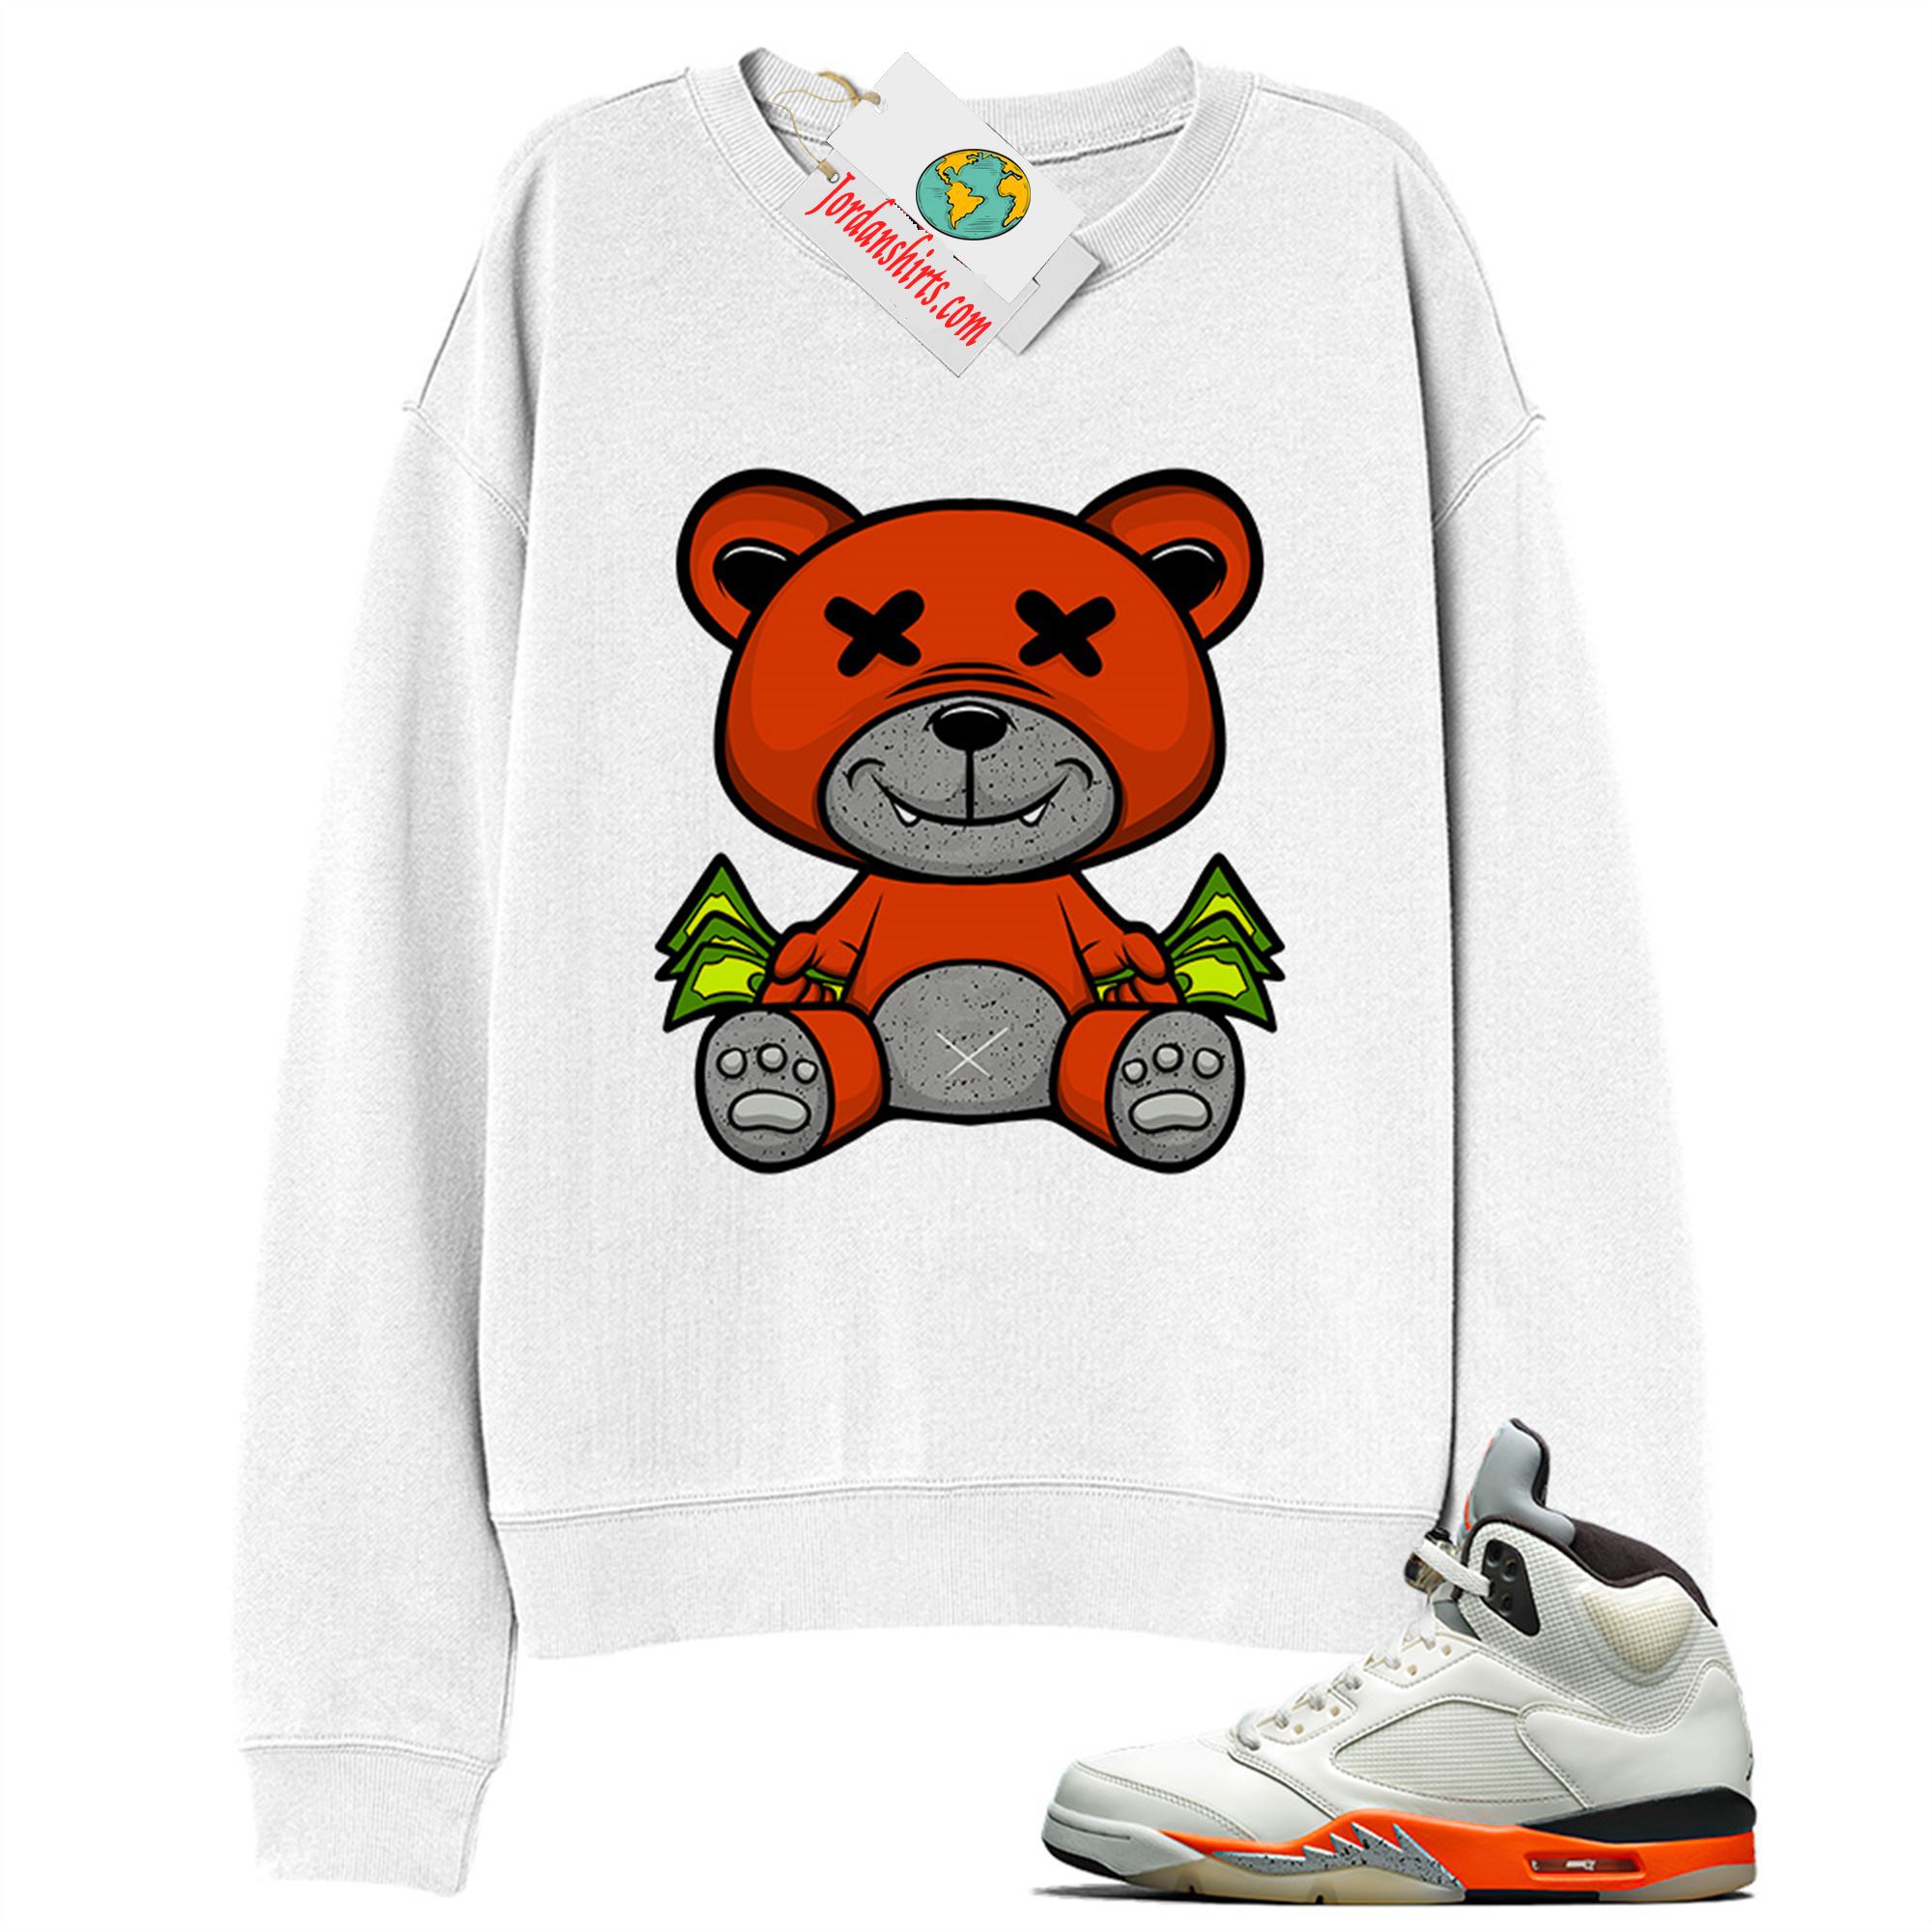 Jordan 5 Sweatshirt, Rich Teddy Bear White Sweatshirt Air Jordan 5 Orange Blaze Shattered Backboard 5s Full Size Up To 5xl